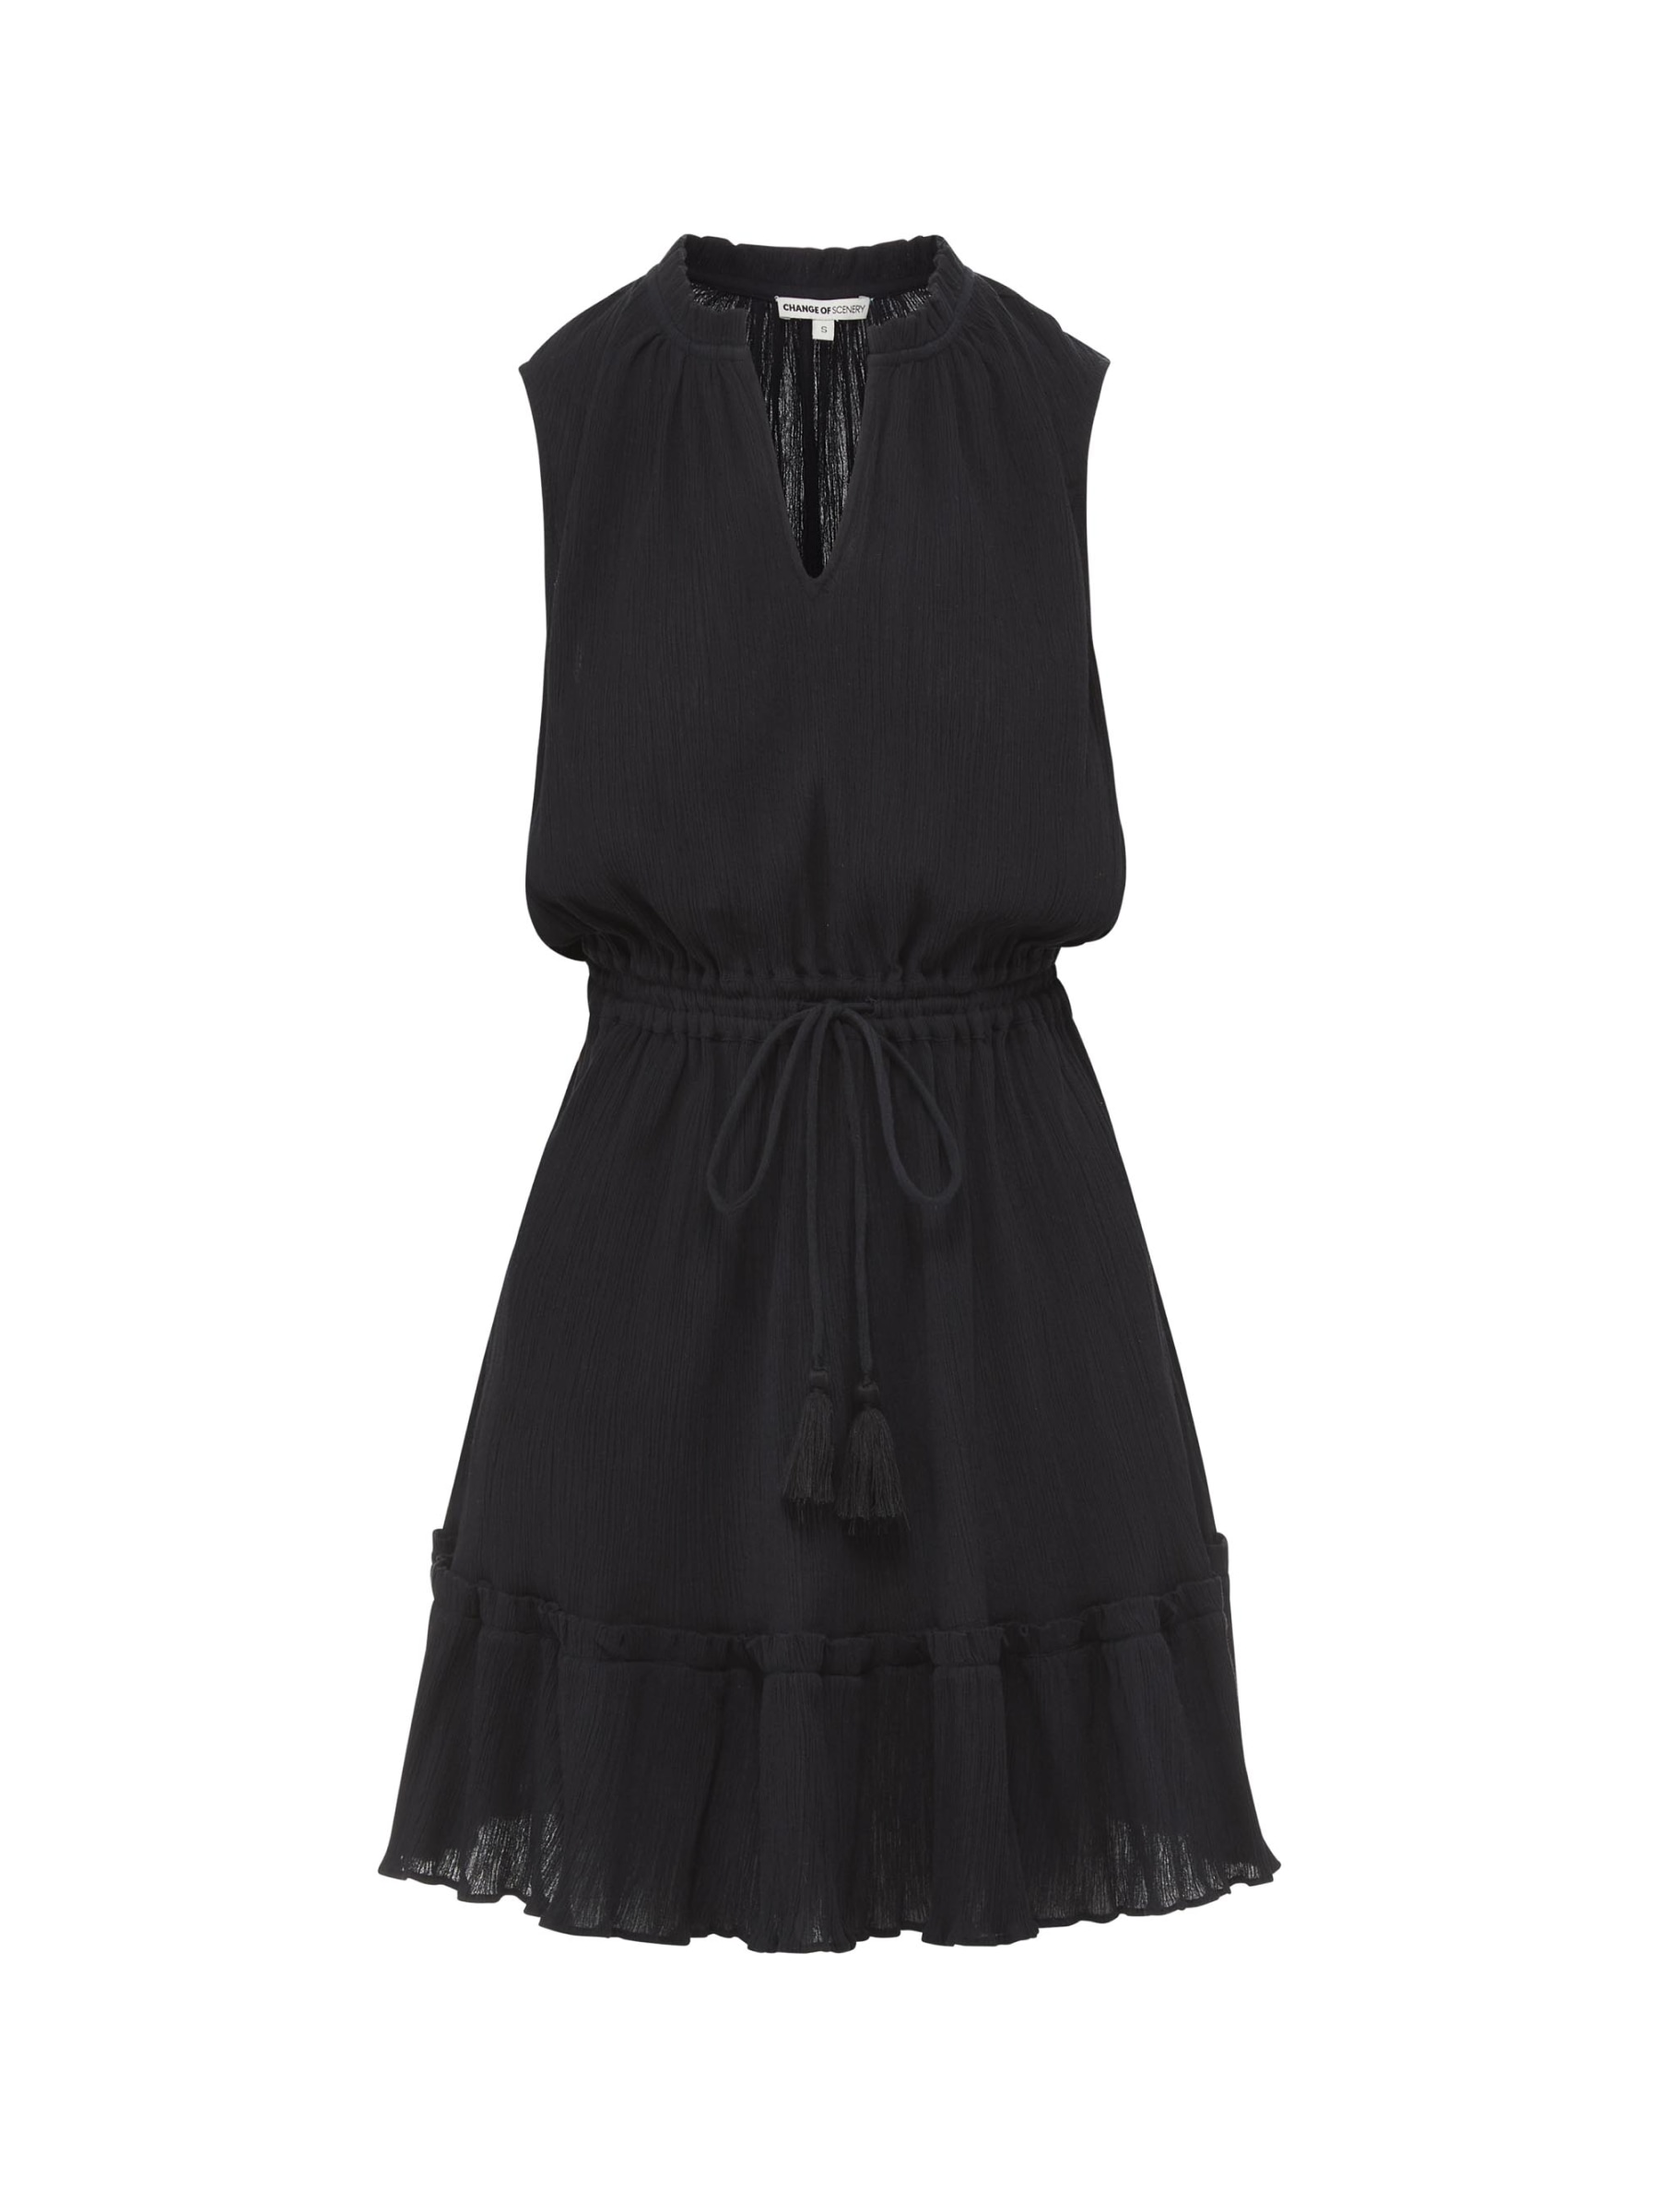 Shop Change Of Scenery Women's Beth Dress Black